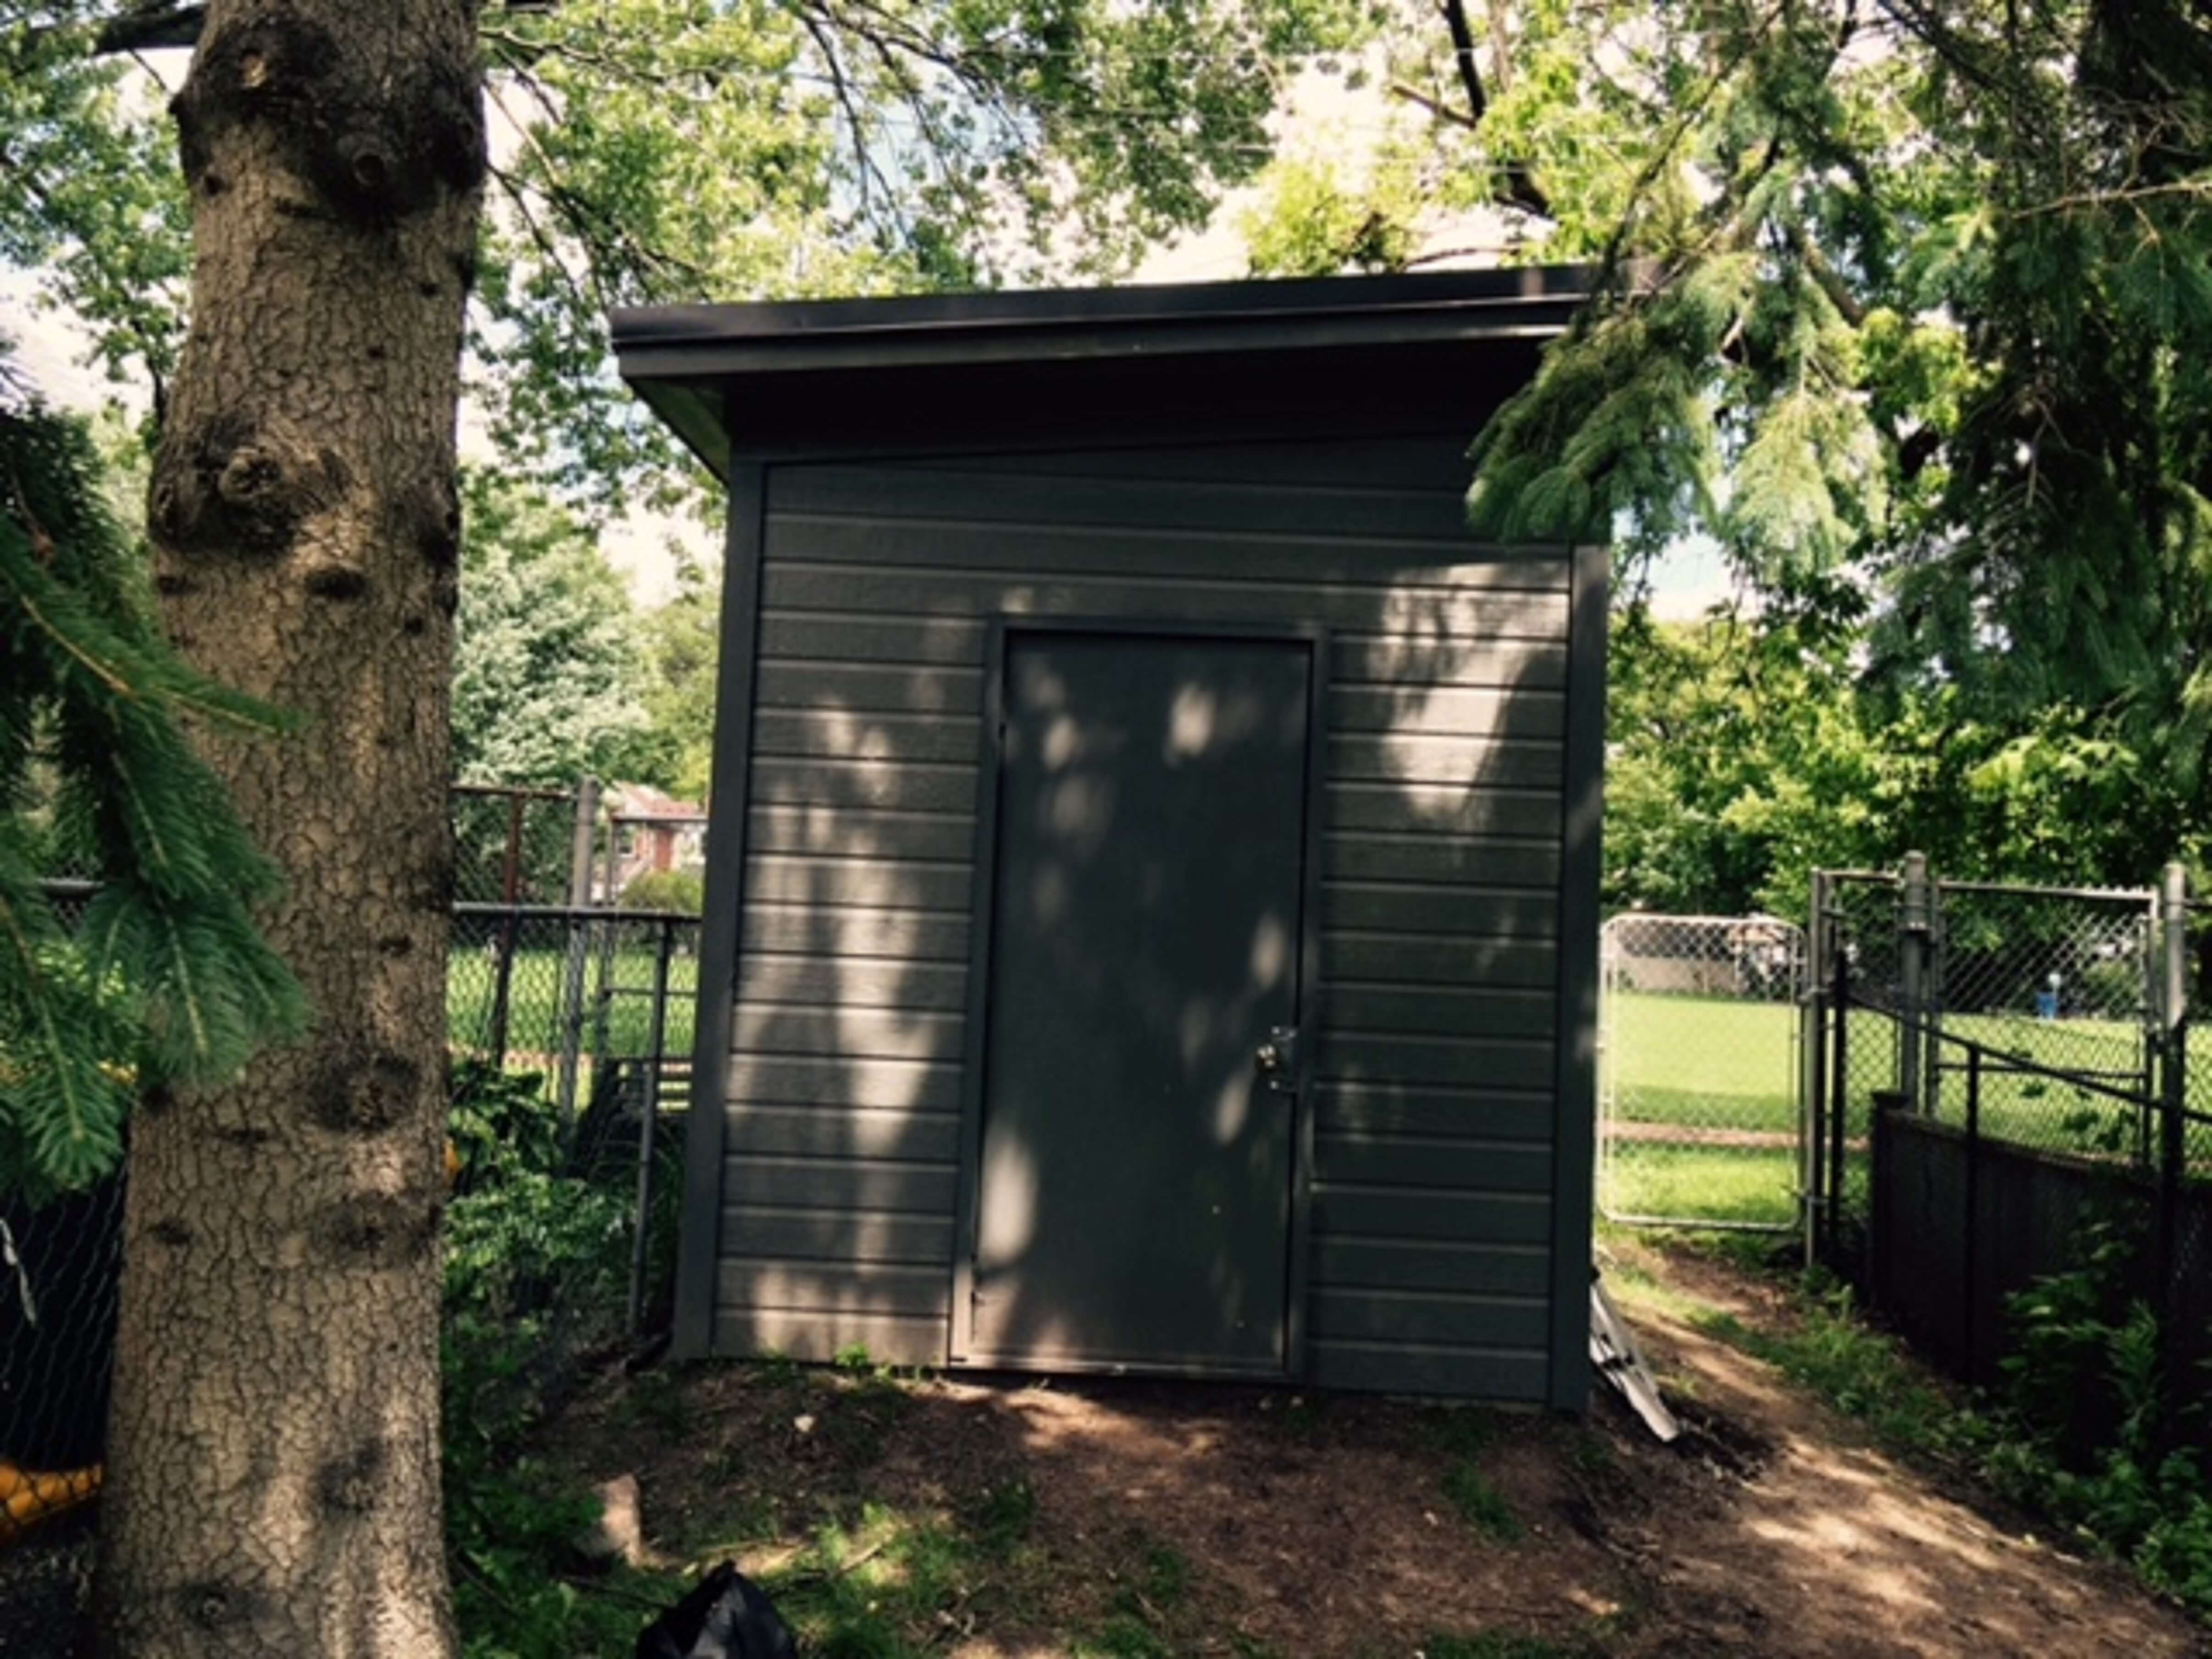 Urban Studio garden shed 8x12 with Metal Deluxe single door in Toronto Ontario. ID number 191692-1.